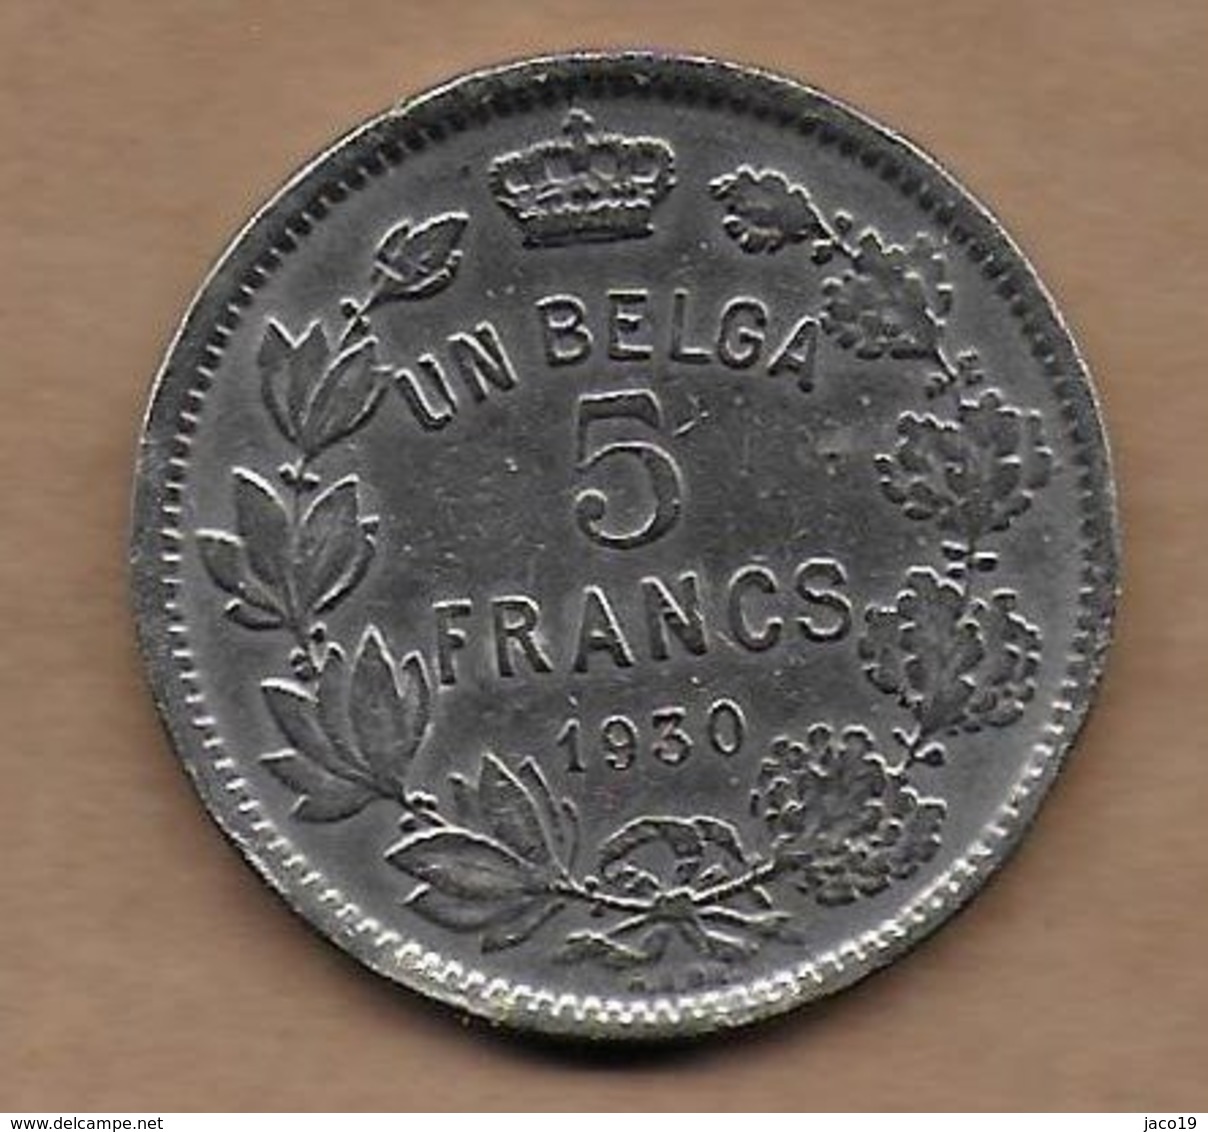 5 Francs Un Belga Nickel 1930 FR Pos . A - 5 Frank & 1 Belga